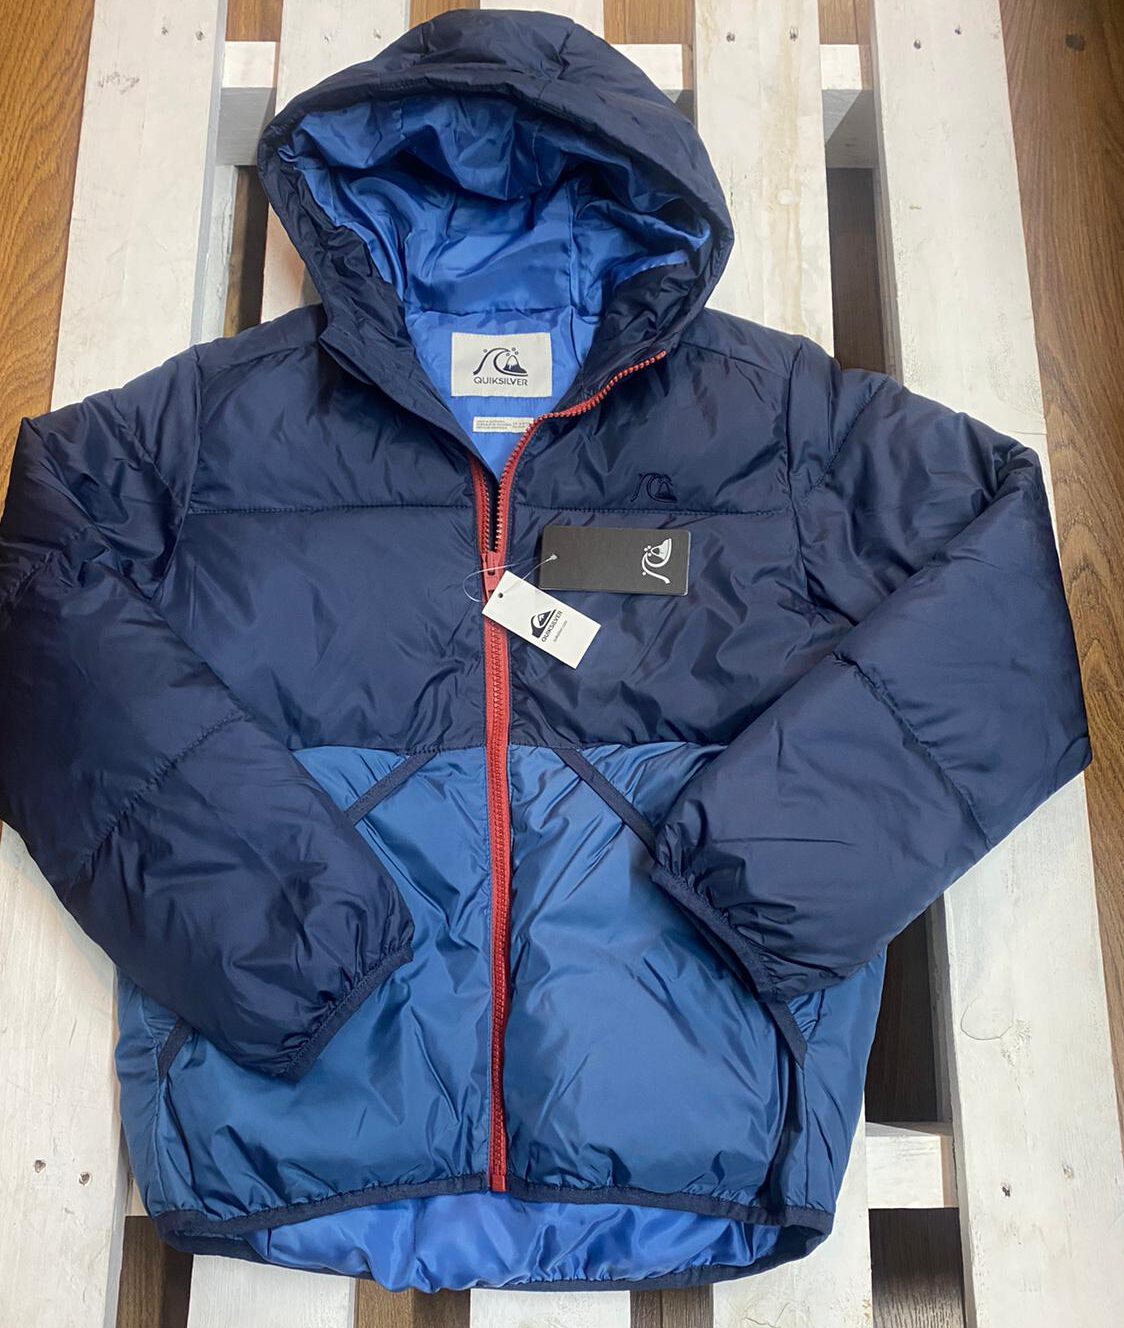 Chaqueta QUIKSILVER exterior niño nieve con capucha Baran Jacket Ref. EQBJK03037 azul claro y oscuro | Martimpe Berart - Tienda de Moda en Vielha, Valle de Aran